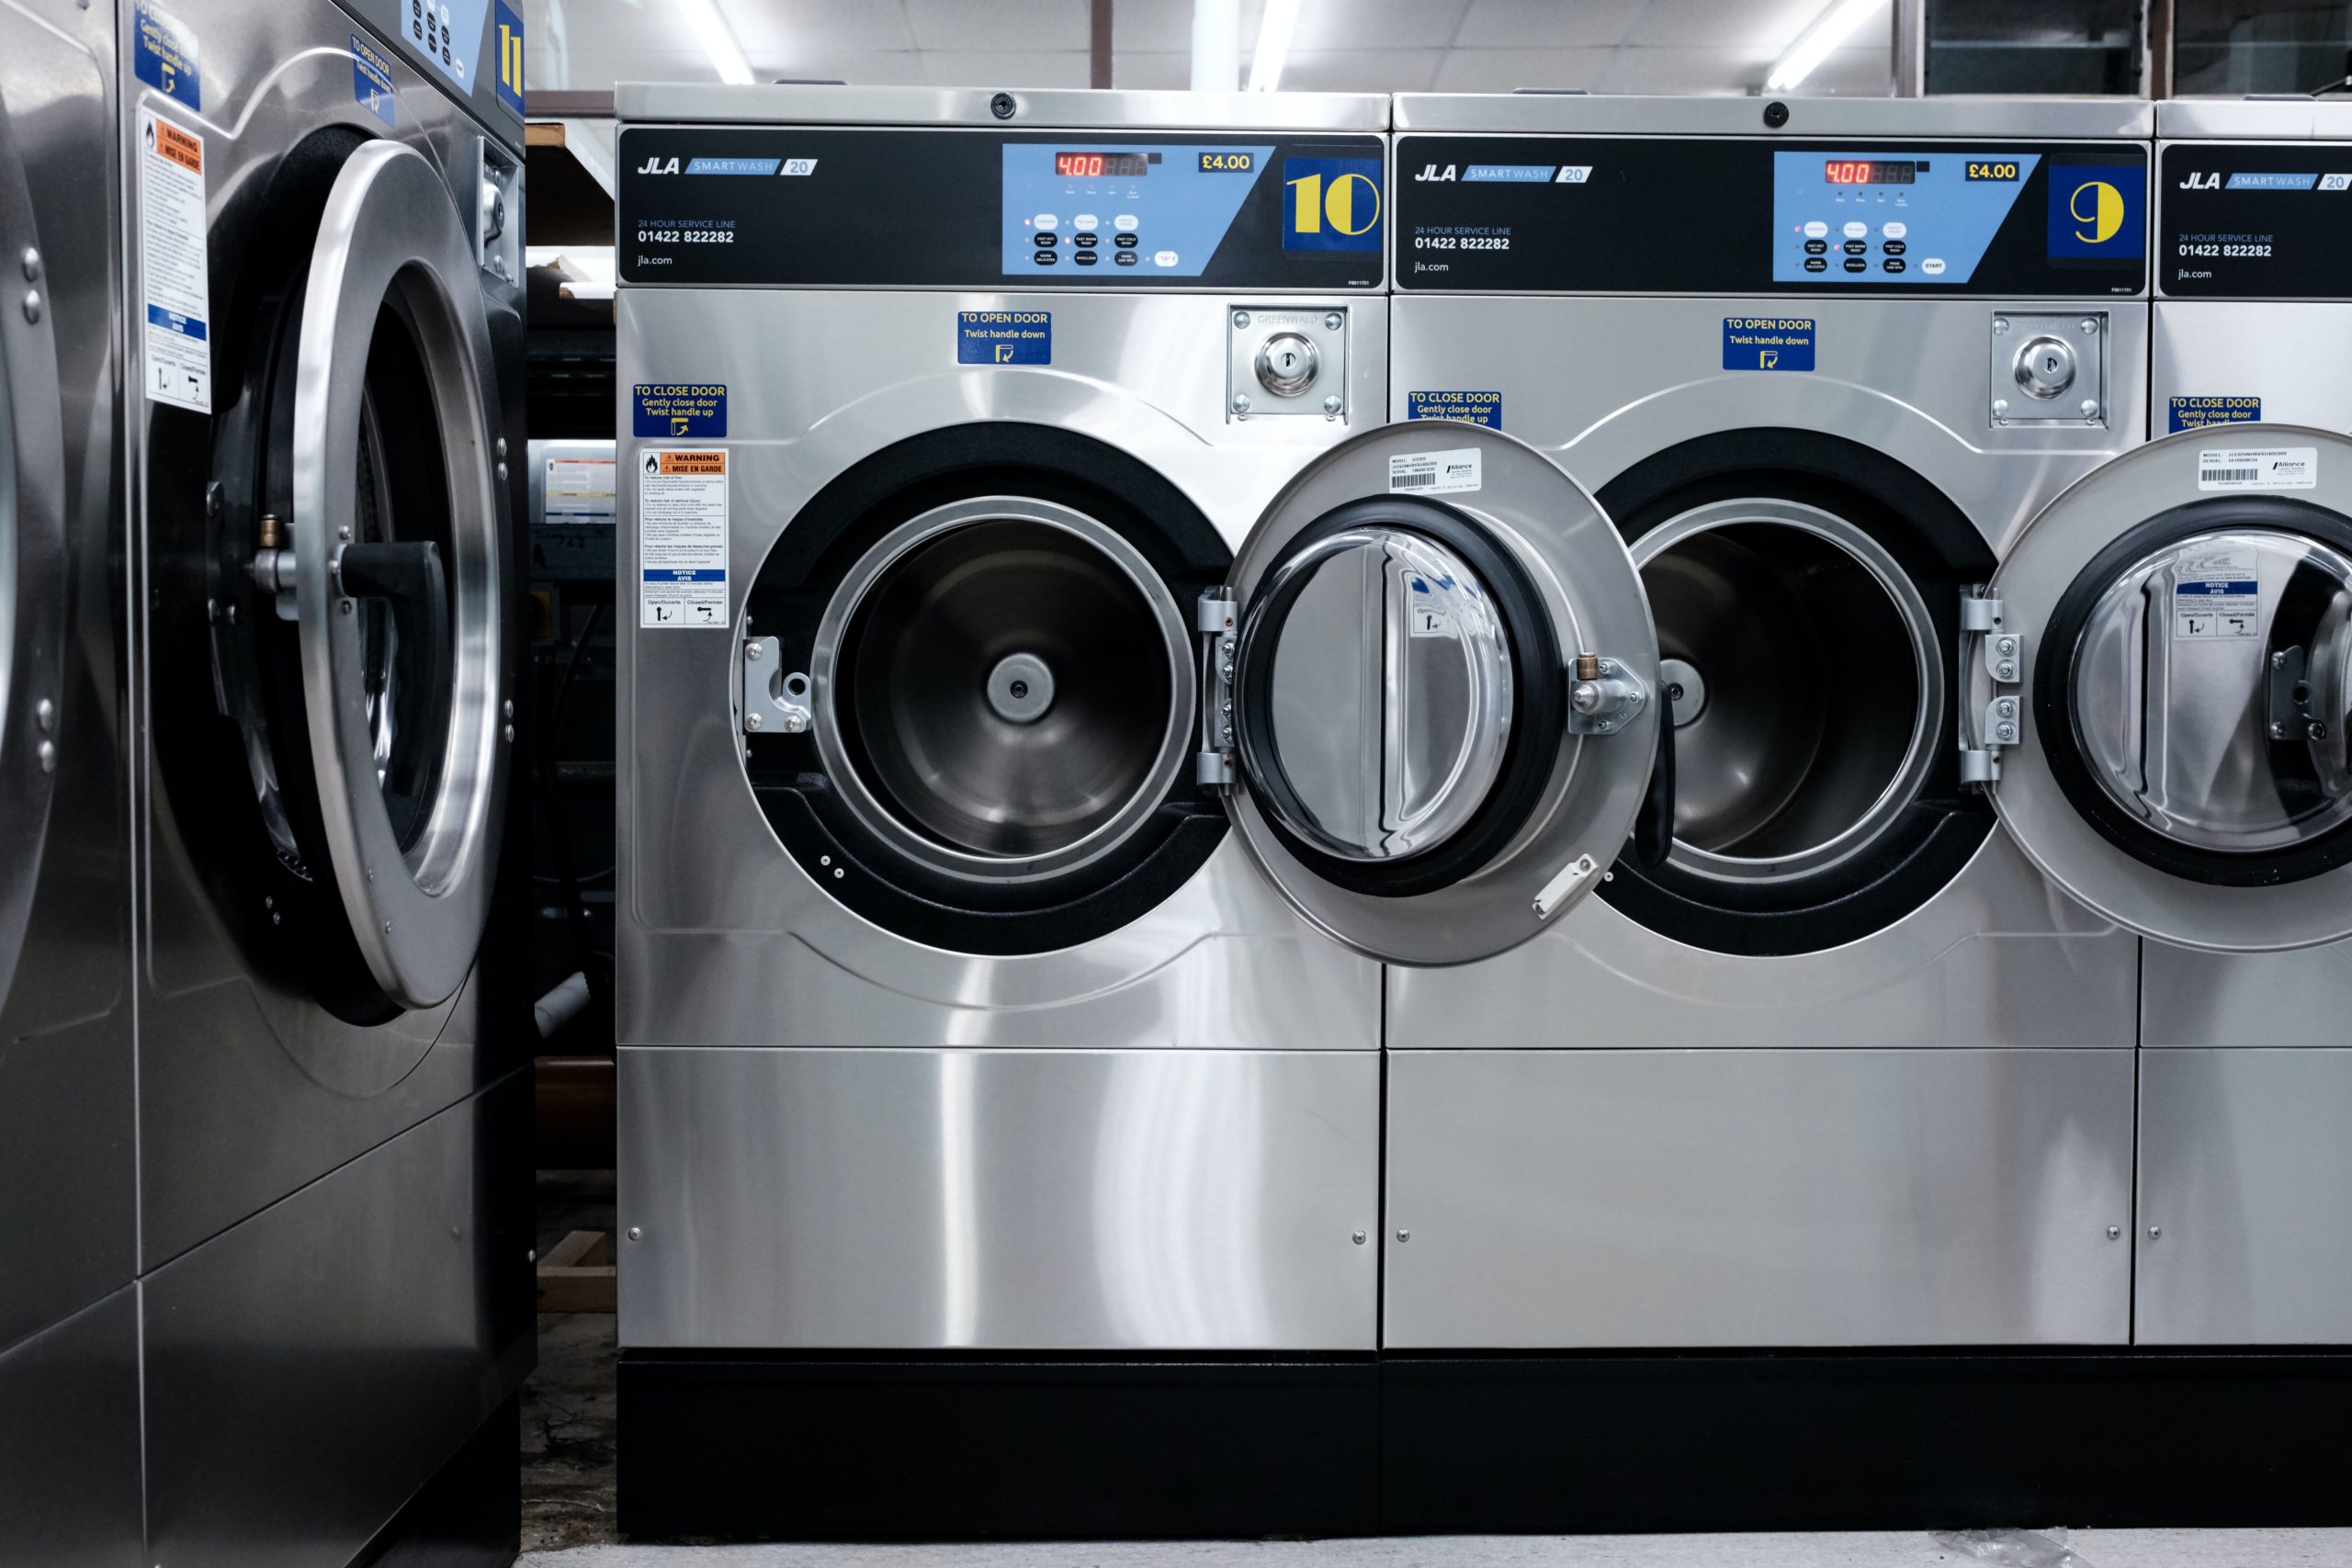 縦型洗濯乾燥機口コミVOL.3】値引き交渉でネット最安値より安く購入